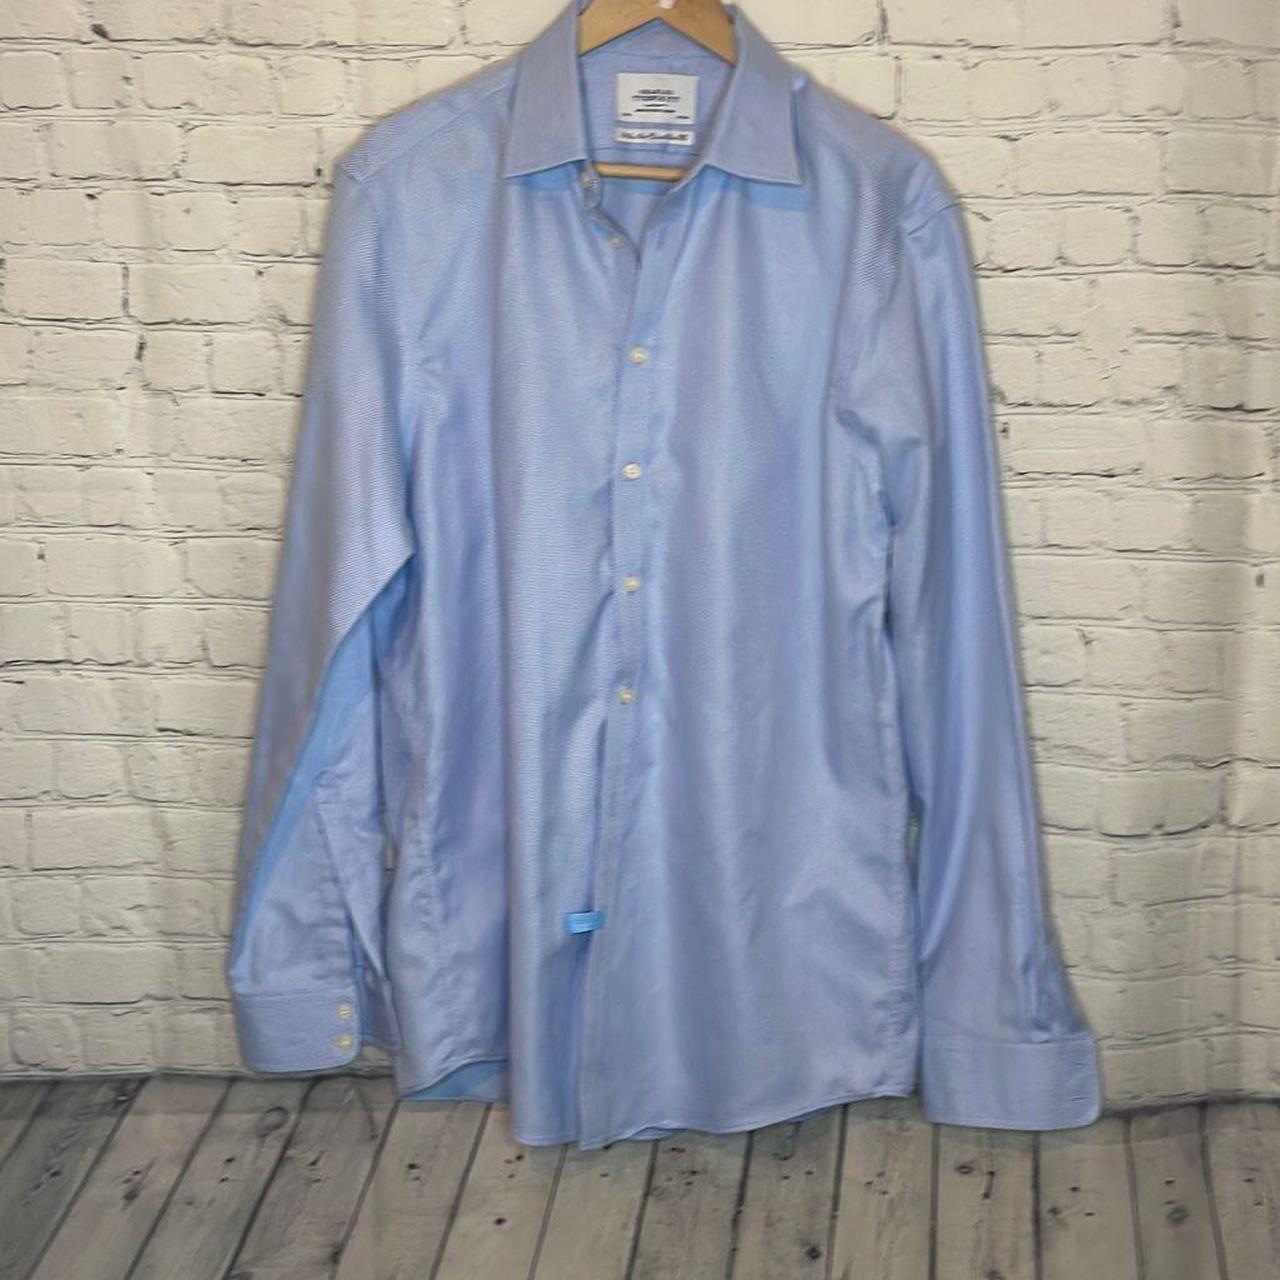 Charles Tyrwhitt Men's Blue and White Shirt